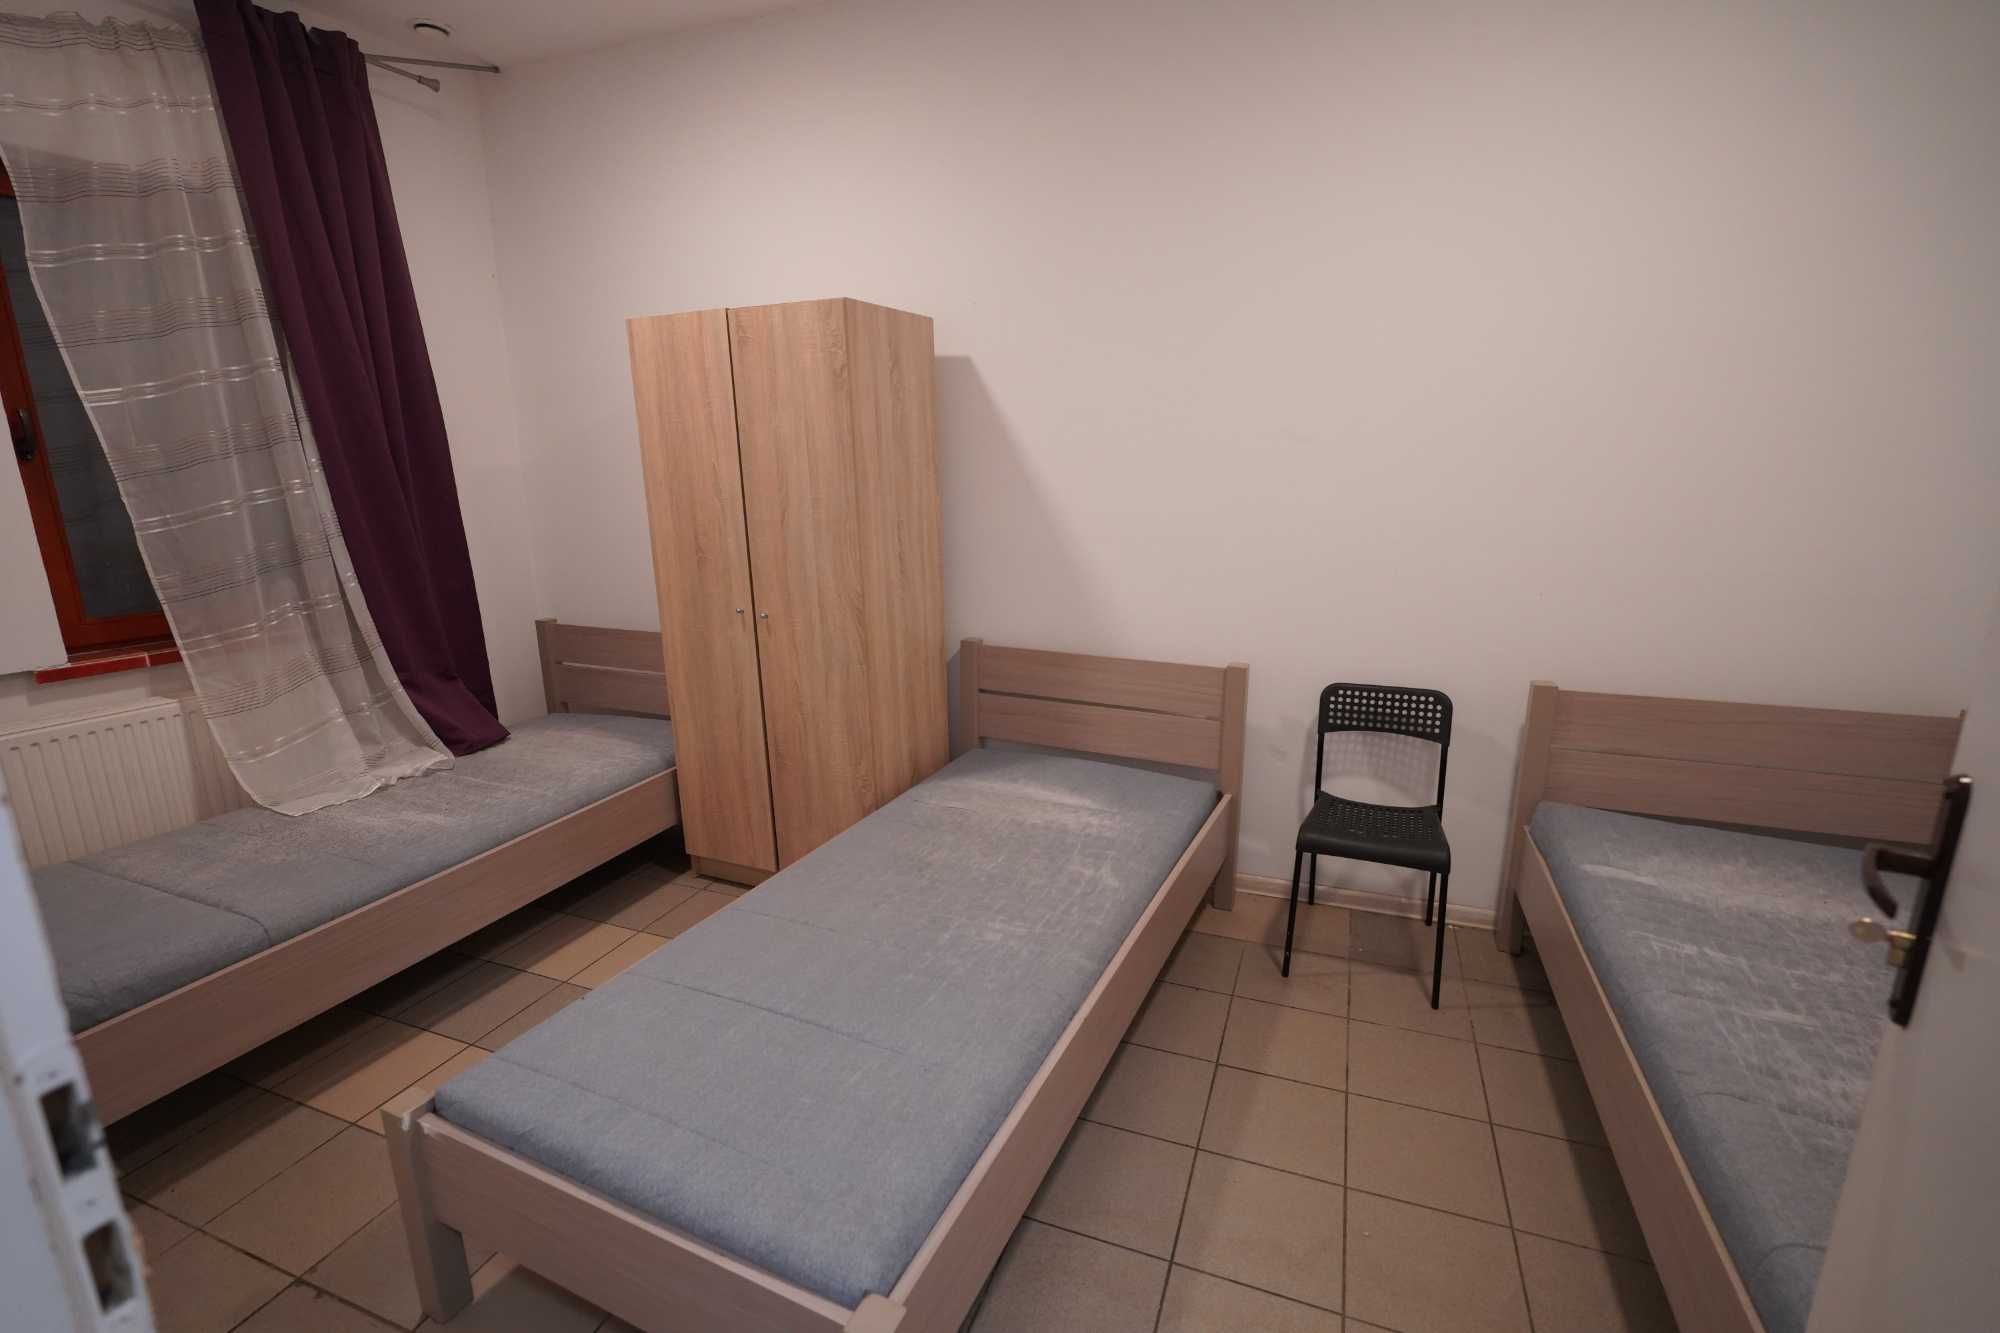 Komfortowy hostel - pokoje i miejsca w pokojach - ul. Słoneczna